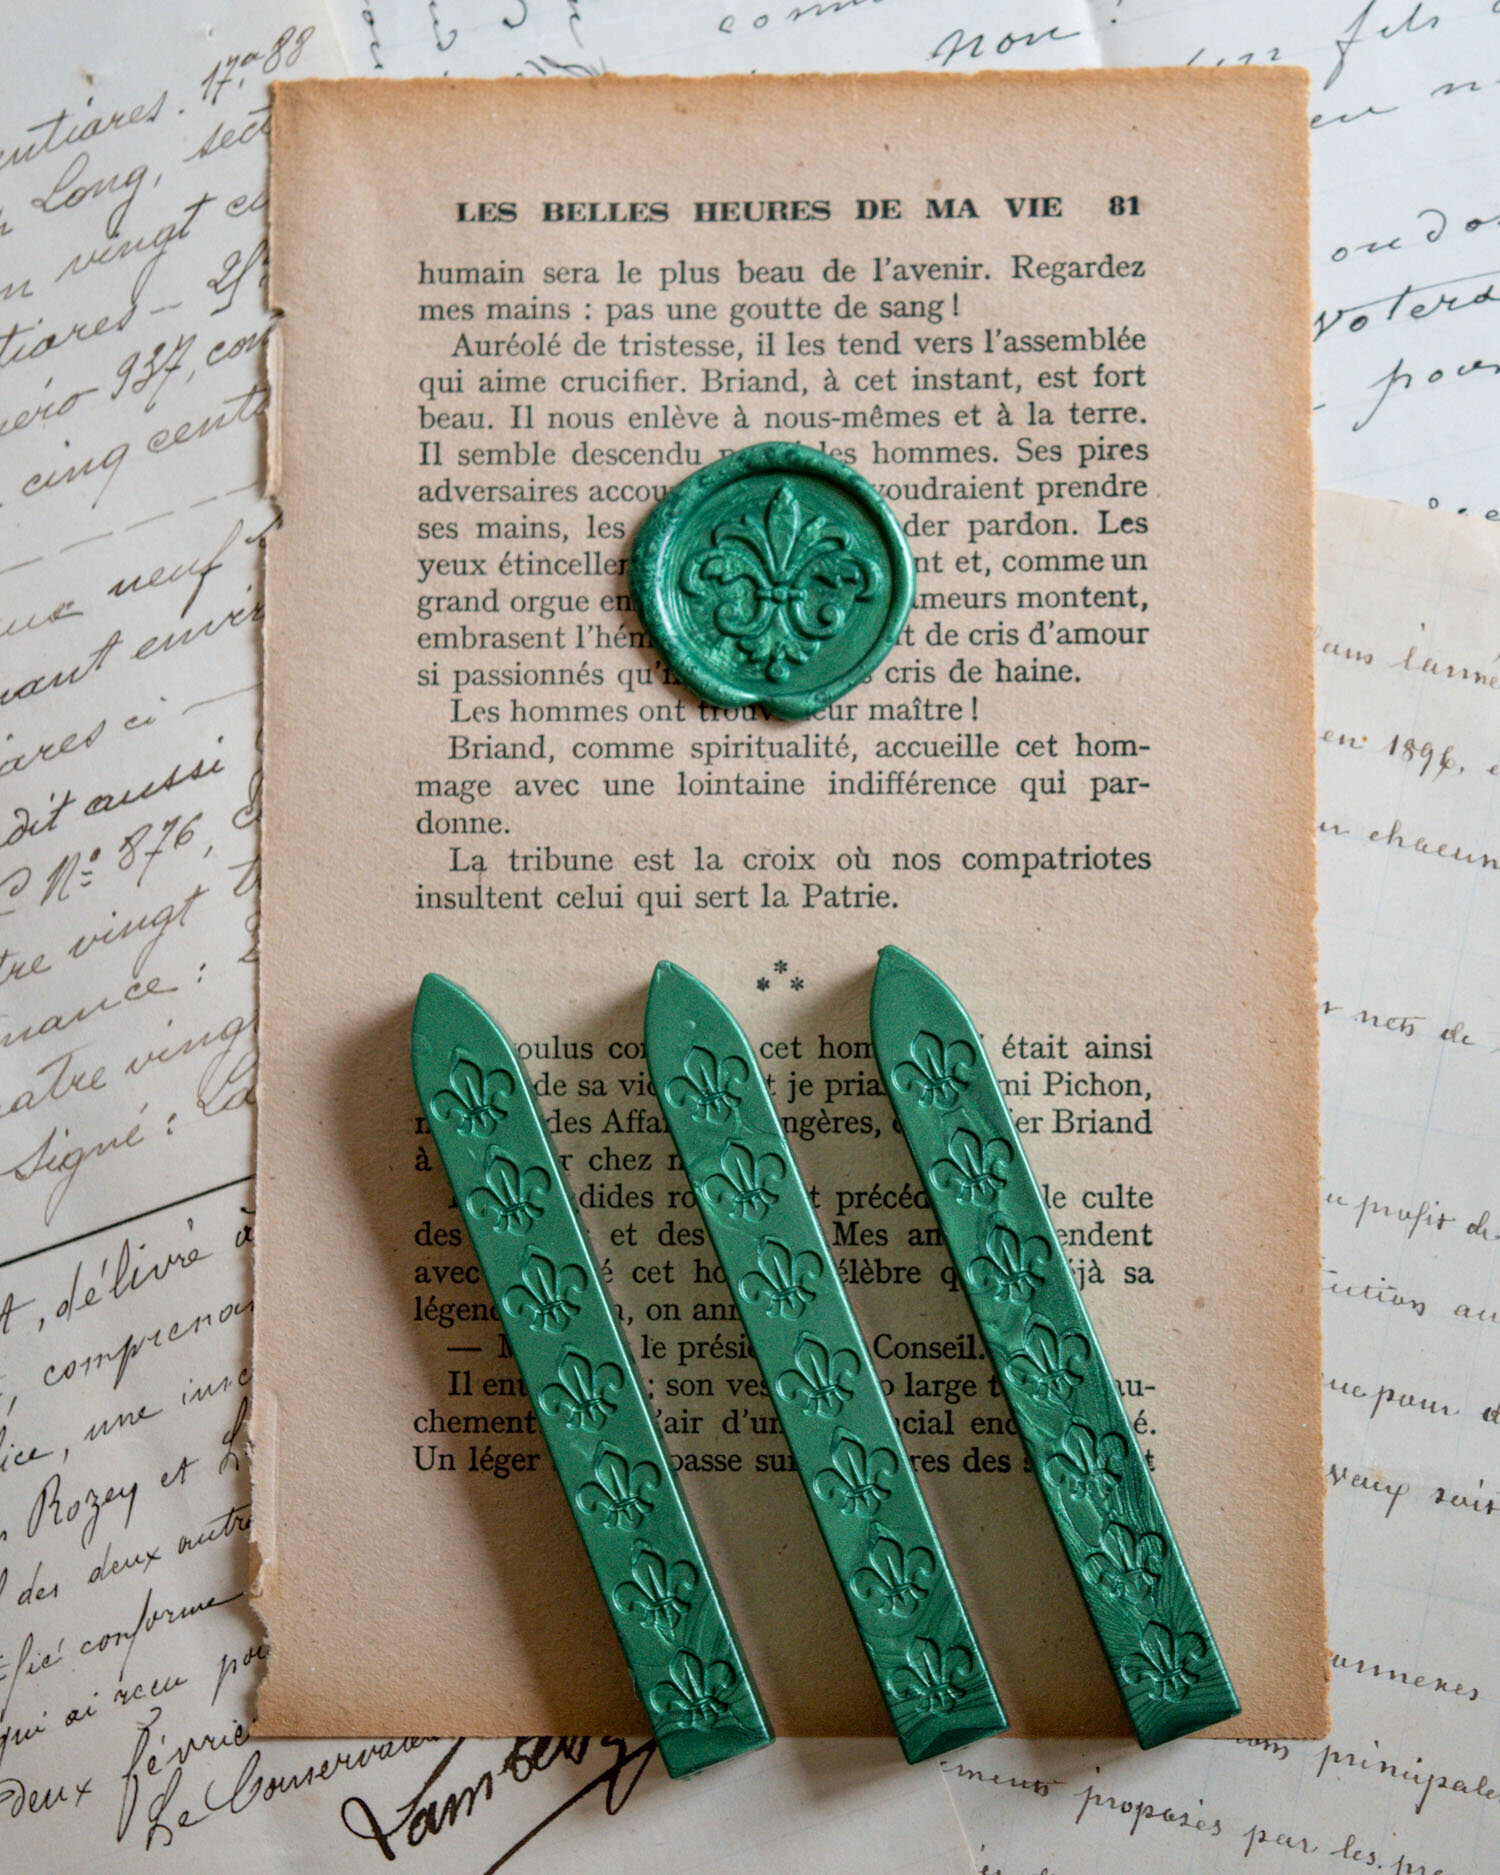 Emerald Green Sealing Wax Stick – sealingwaxstamp